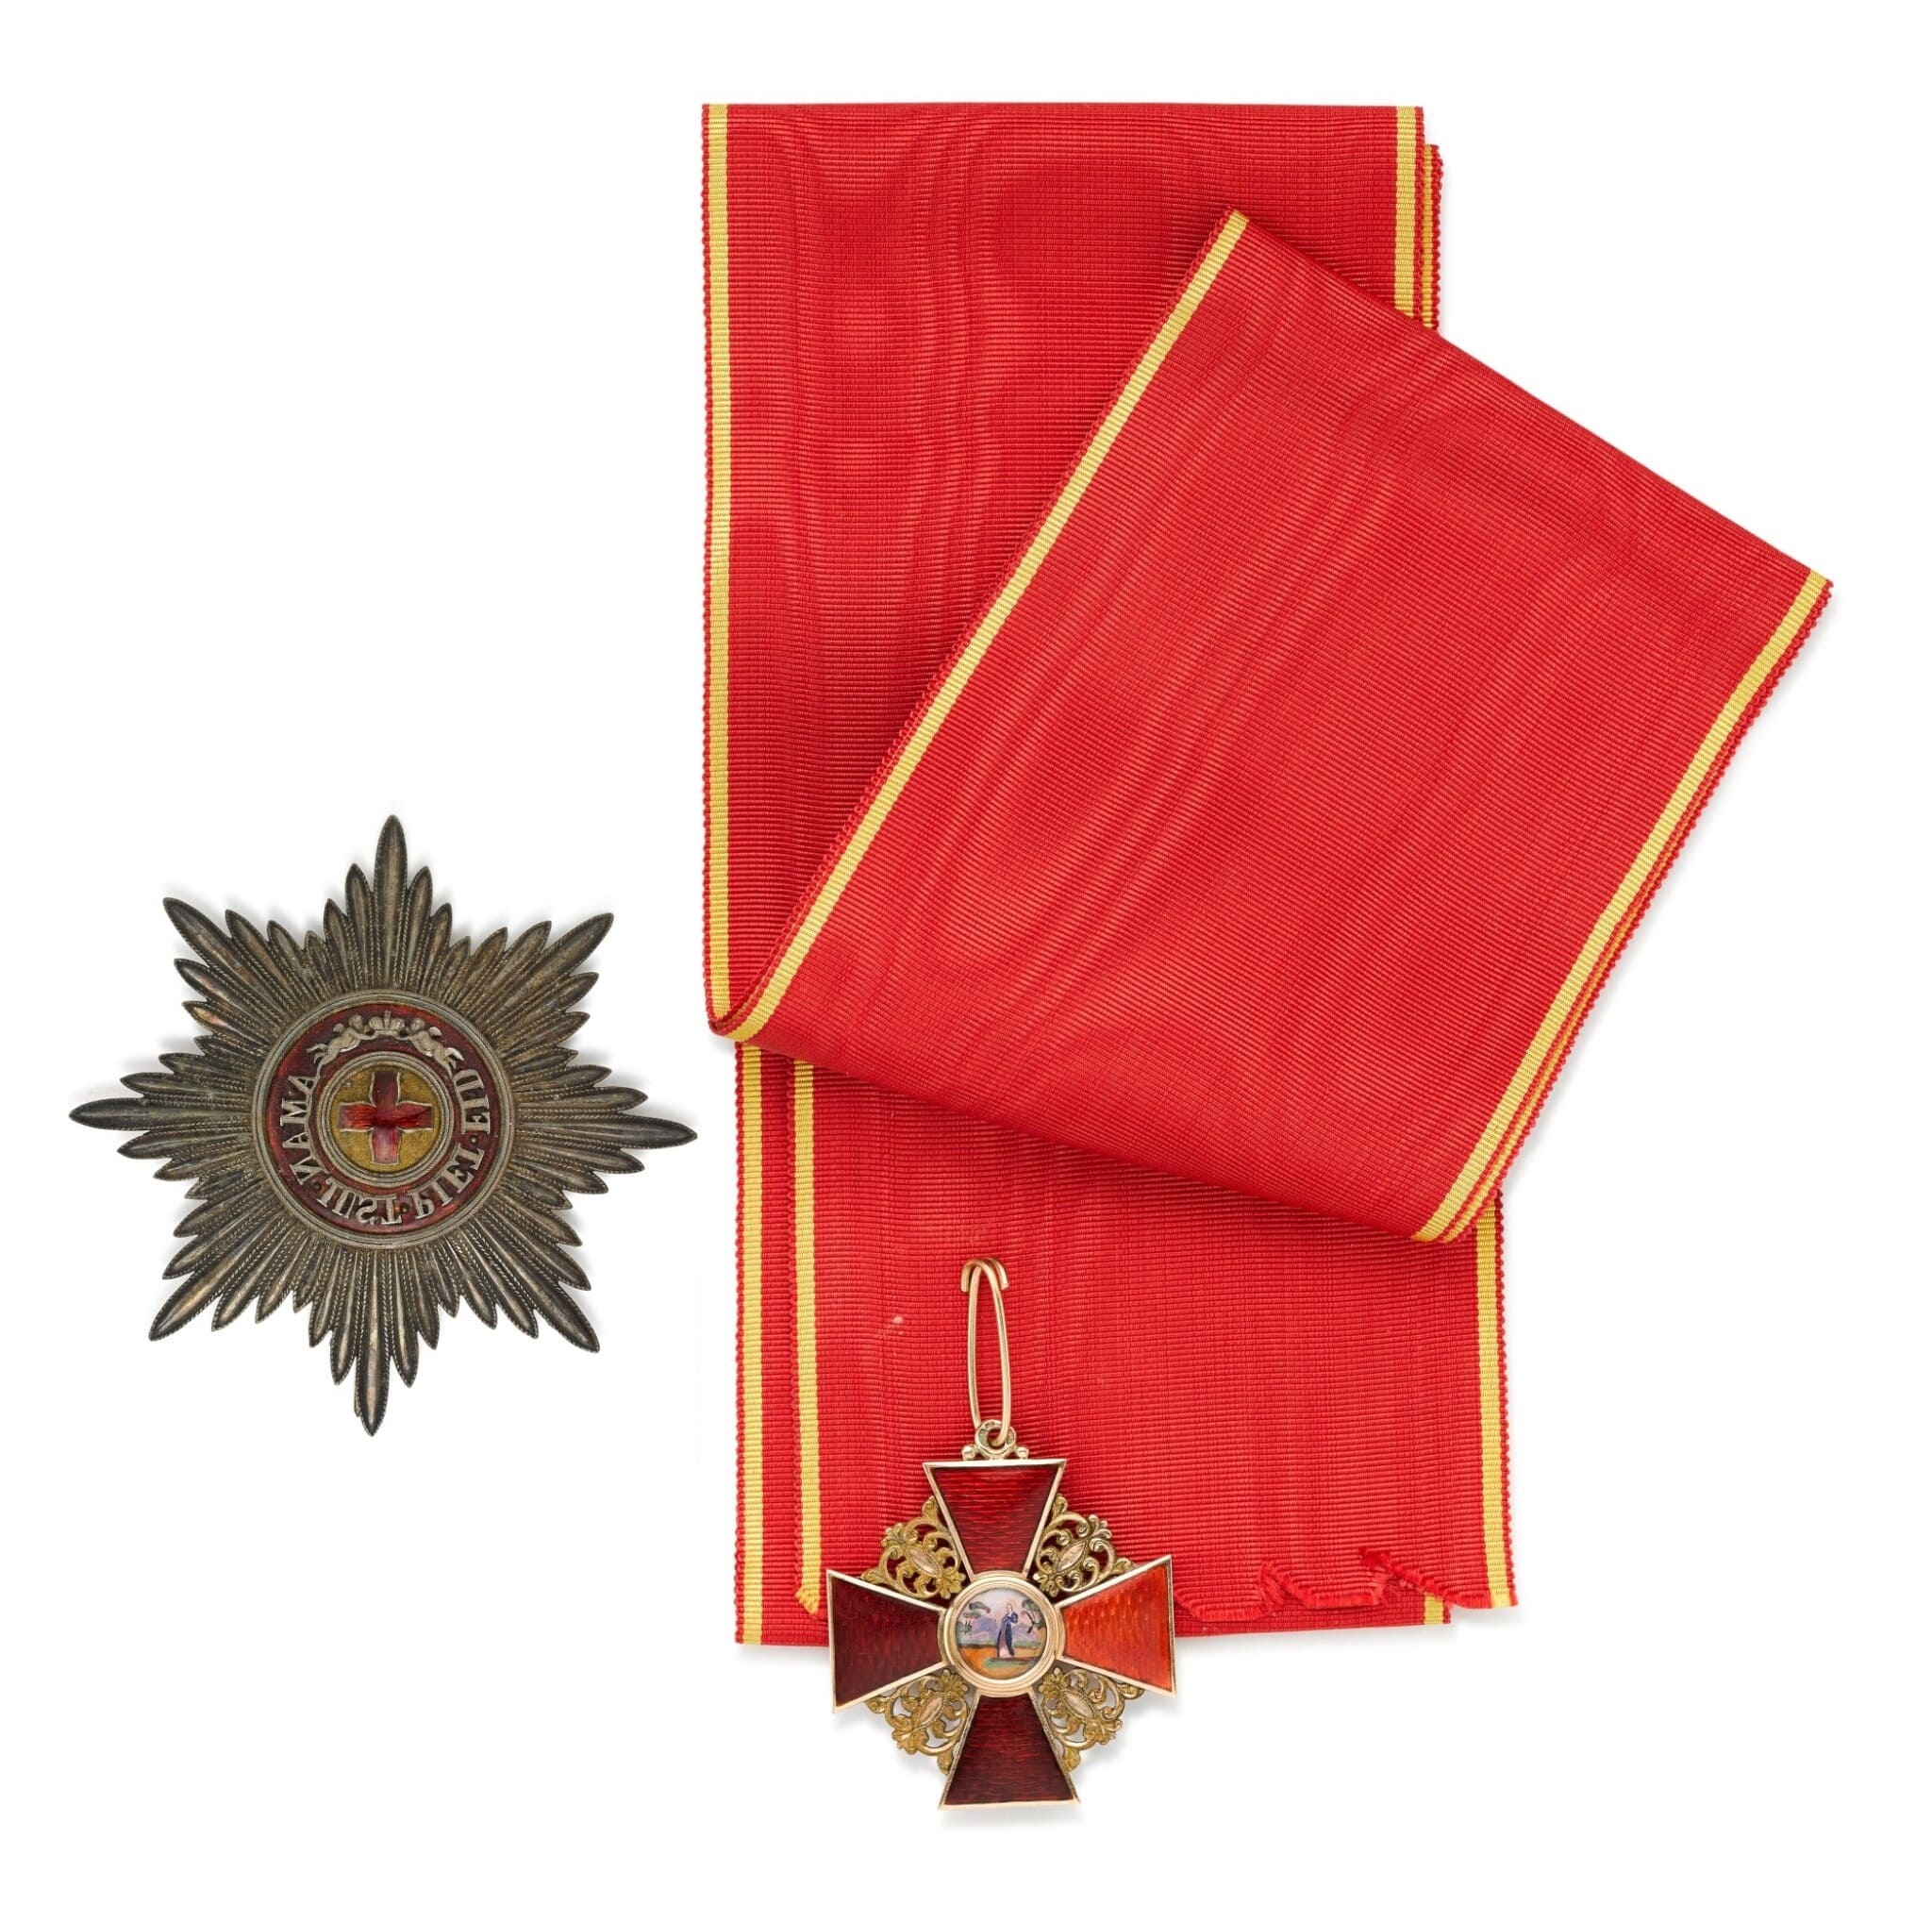 Орден Святой Анны 1-го класса  Вильгельма  Кейбеля.jpg